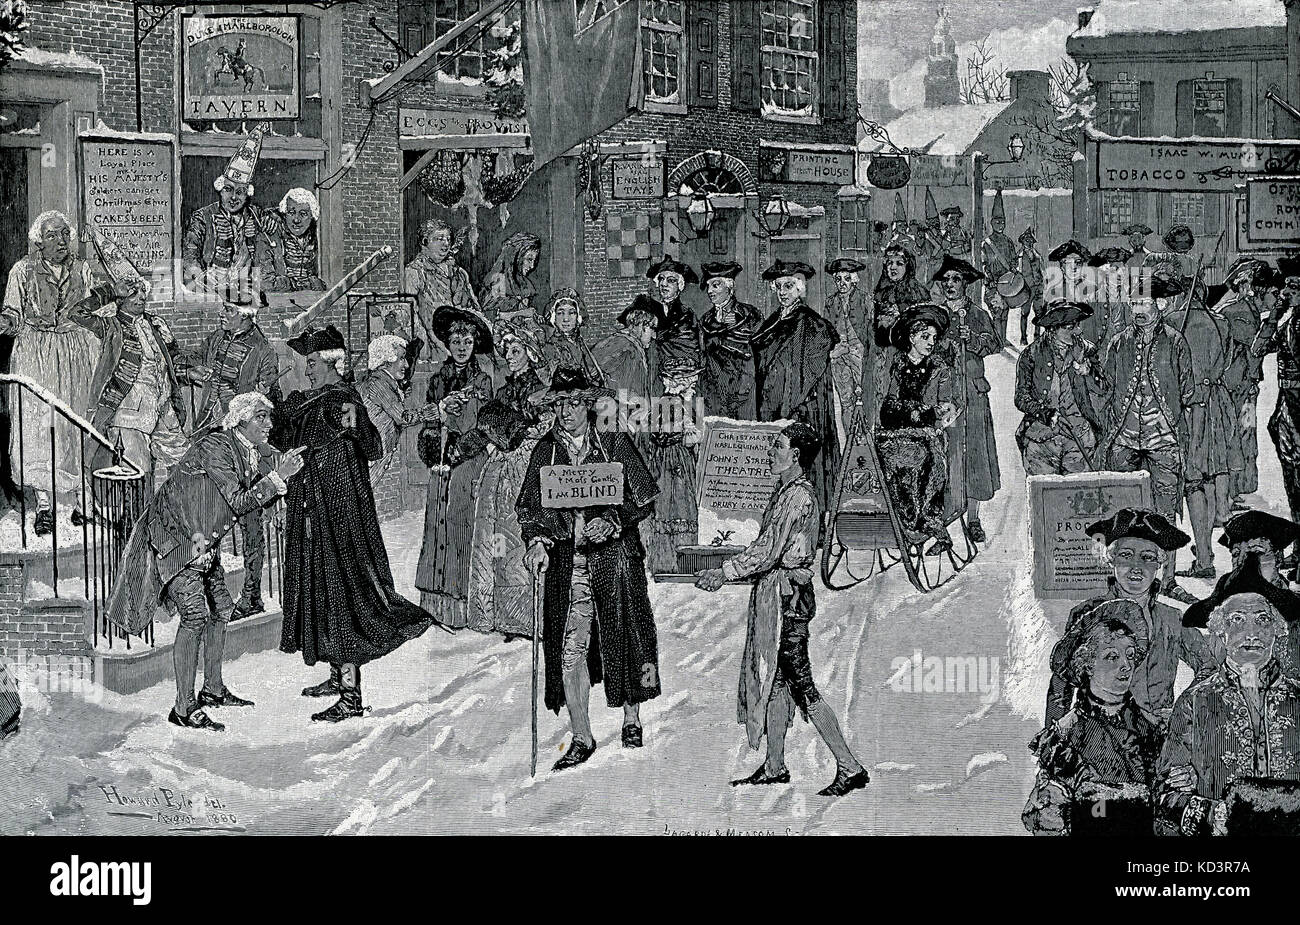 Noël matin dans le vieux New York, 1700 avant la Révolution américaine. Illustration de Howard Pyle, 1880 Banque D'Images